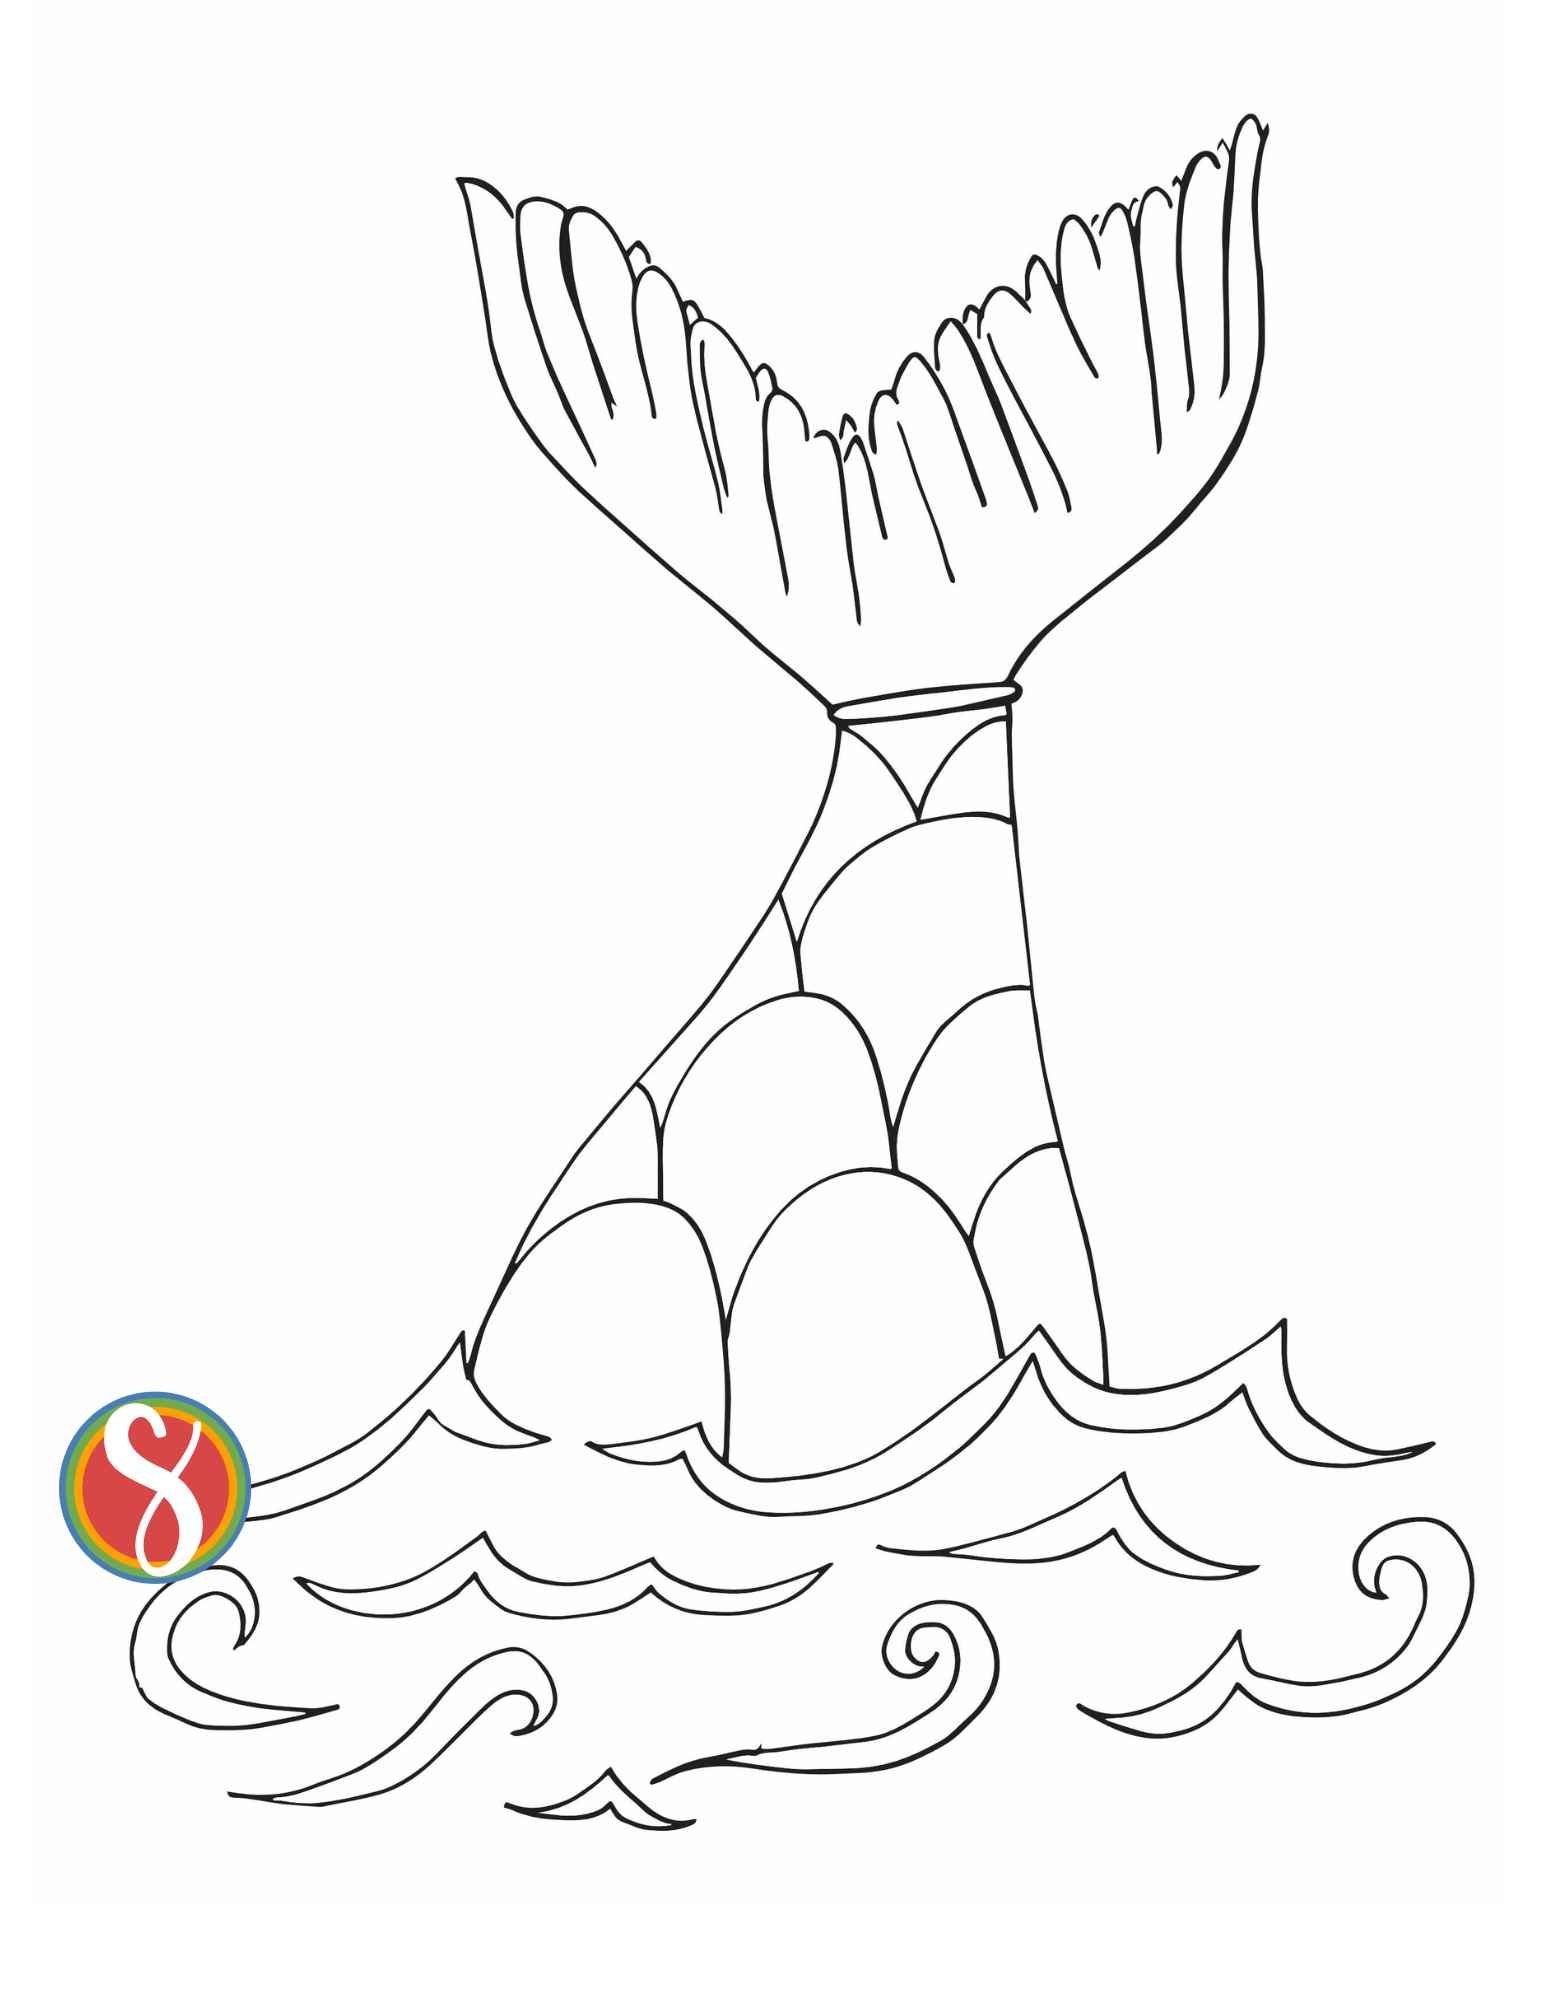 Free mermaid coloring pages â stevie doodles